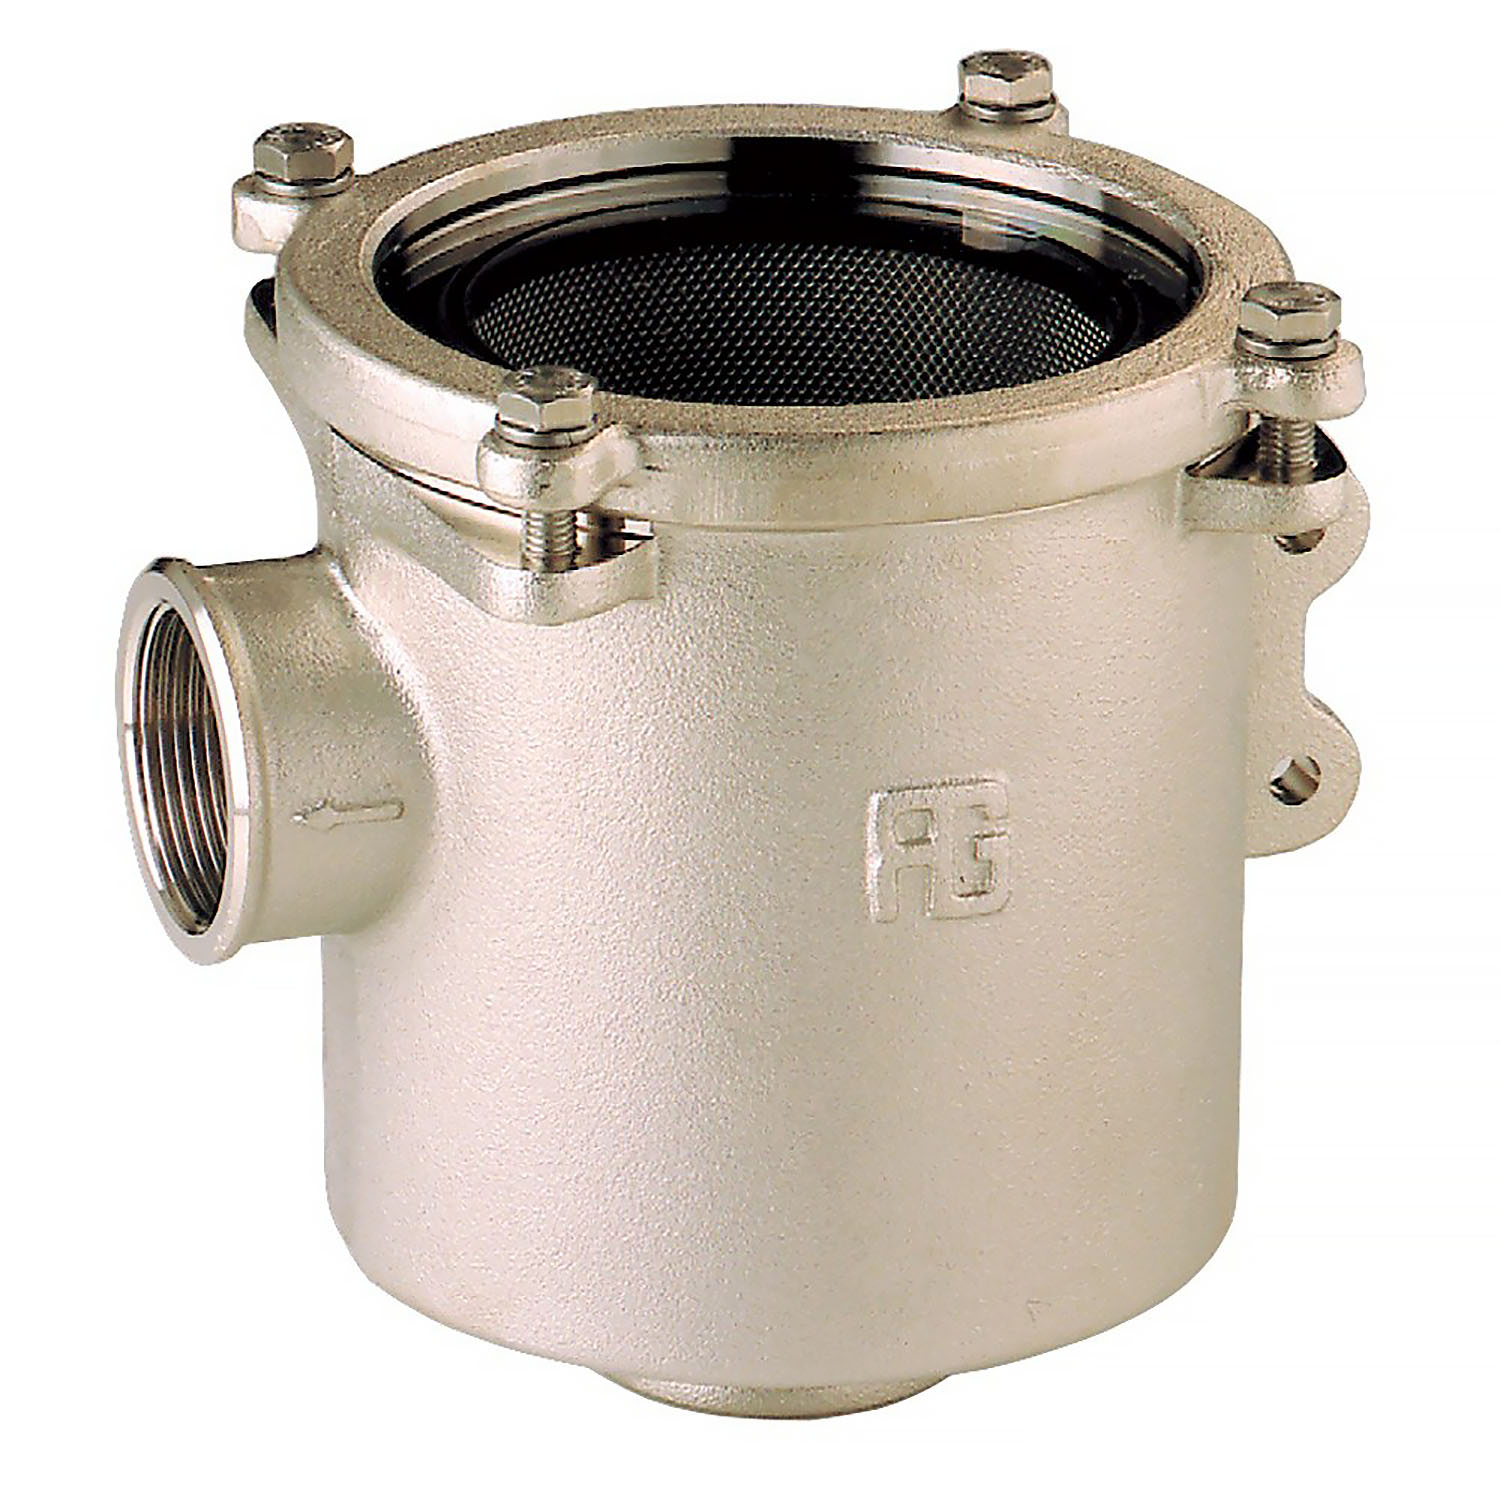 Фильтр водяной системы охлаждения двигателя Guidi Marine Ionio 1164 1164#220005 3/4" 4650 - 14900 л/час